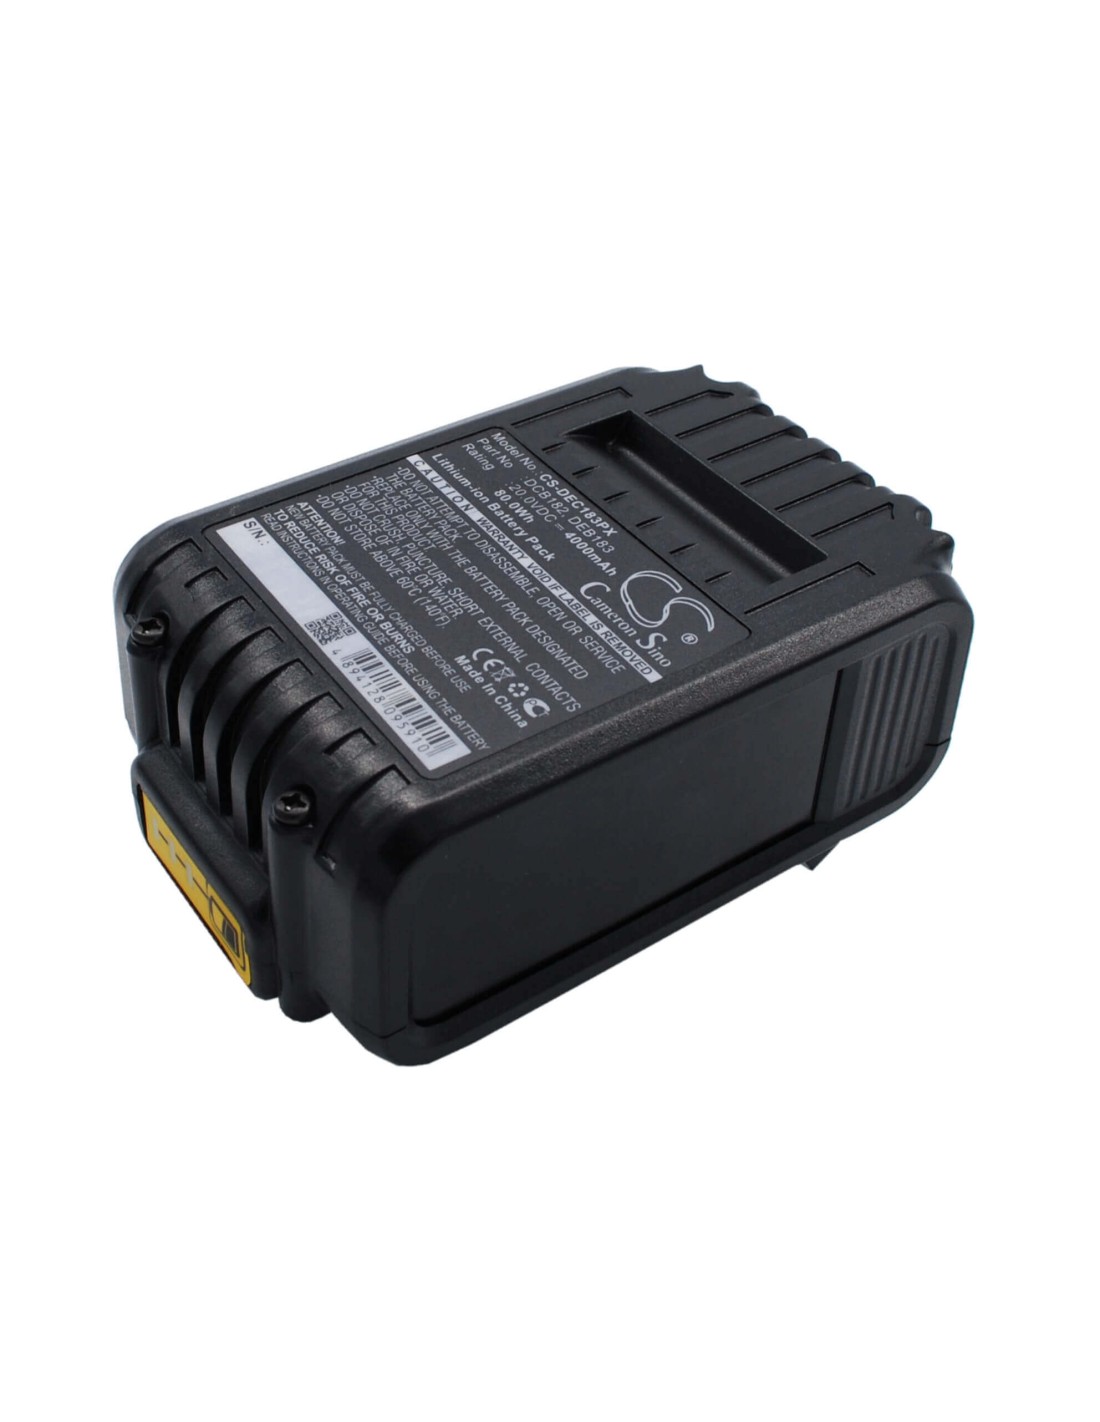 Battery for Dewalt Dcd740, Dcd740b, Dcd780 20V, 4000mAh - 80.00Wh